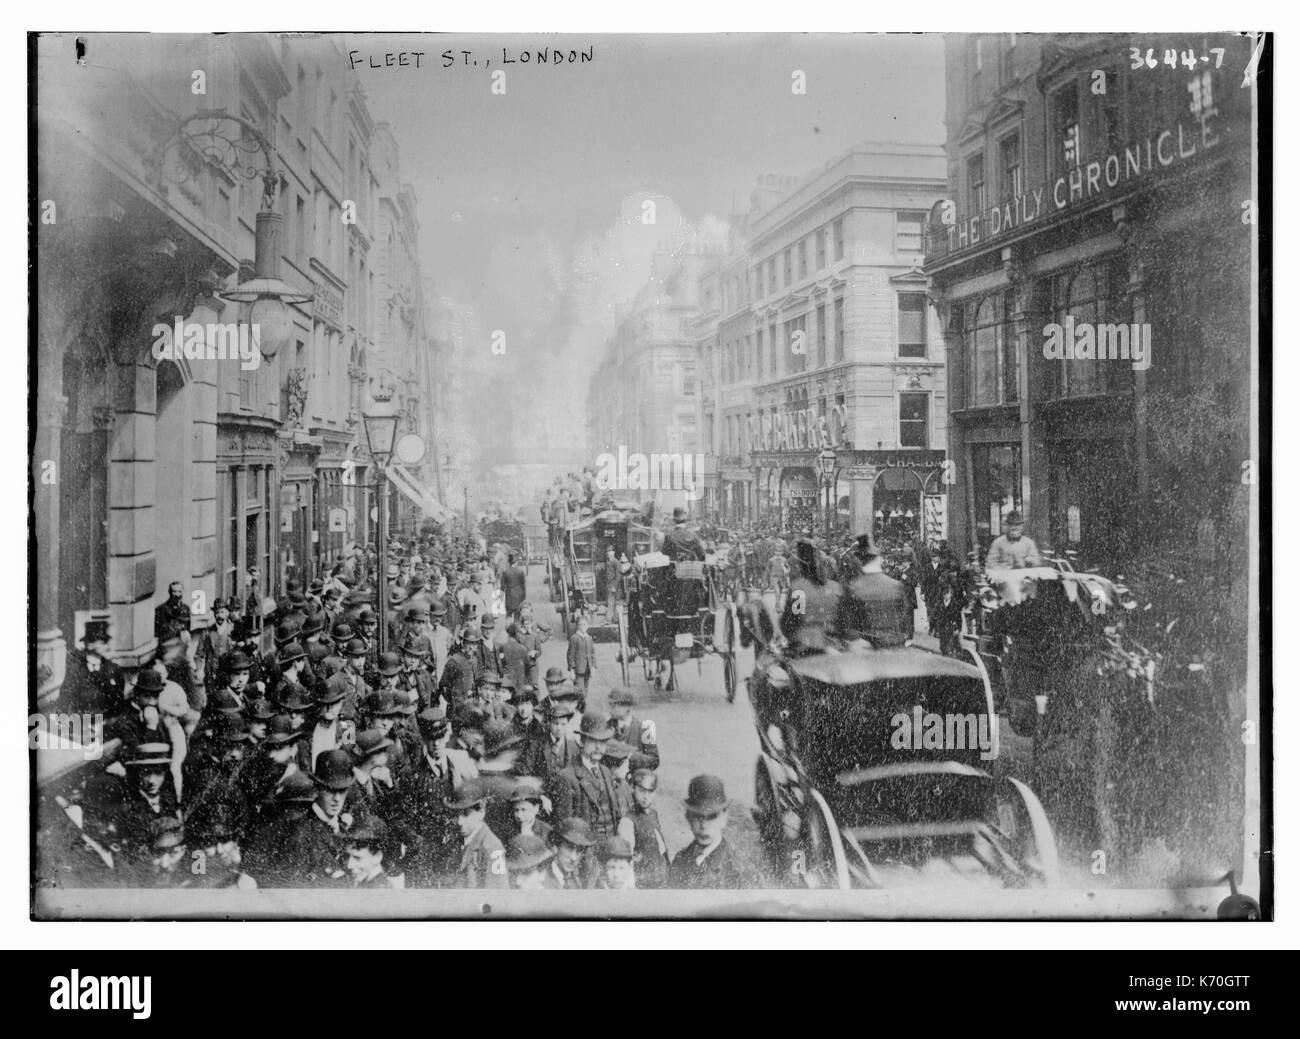 Vista de la calle Fleet de Londres mostrando una multitud de trabajadores y carruajes. Circa 1910. Foto de stock